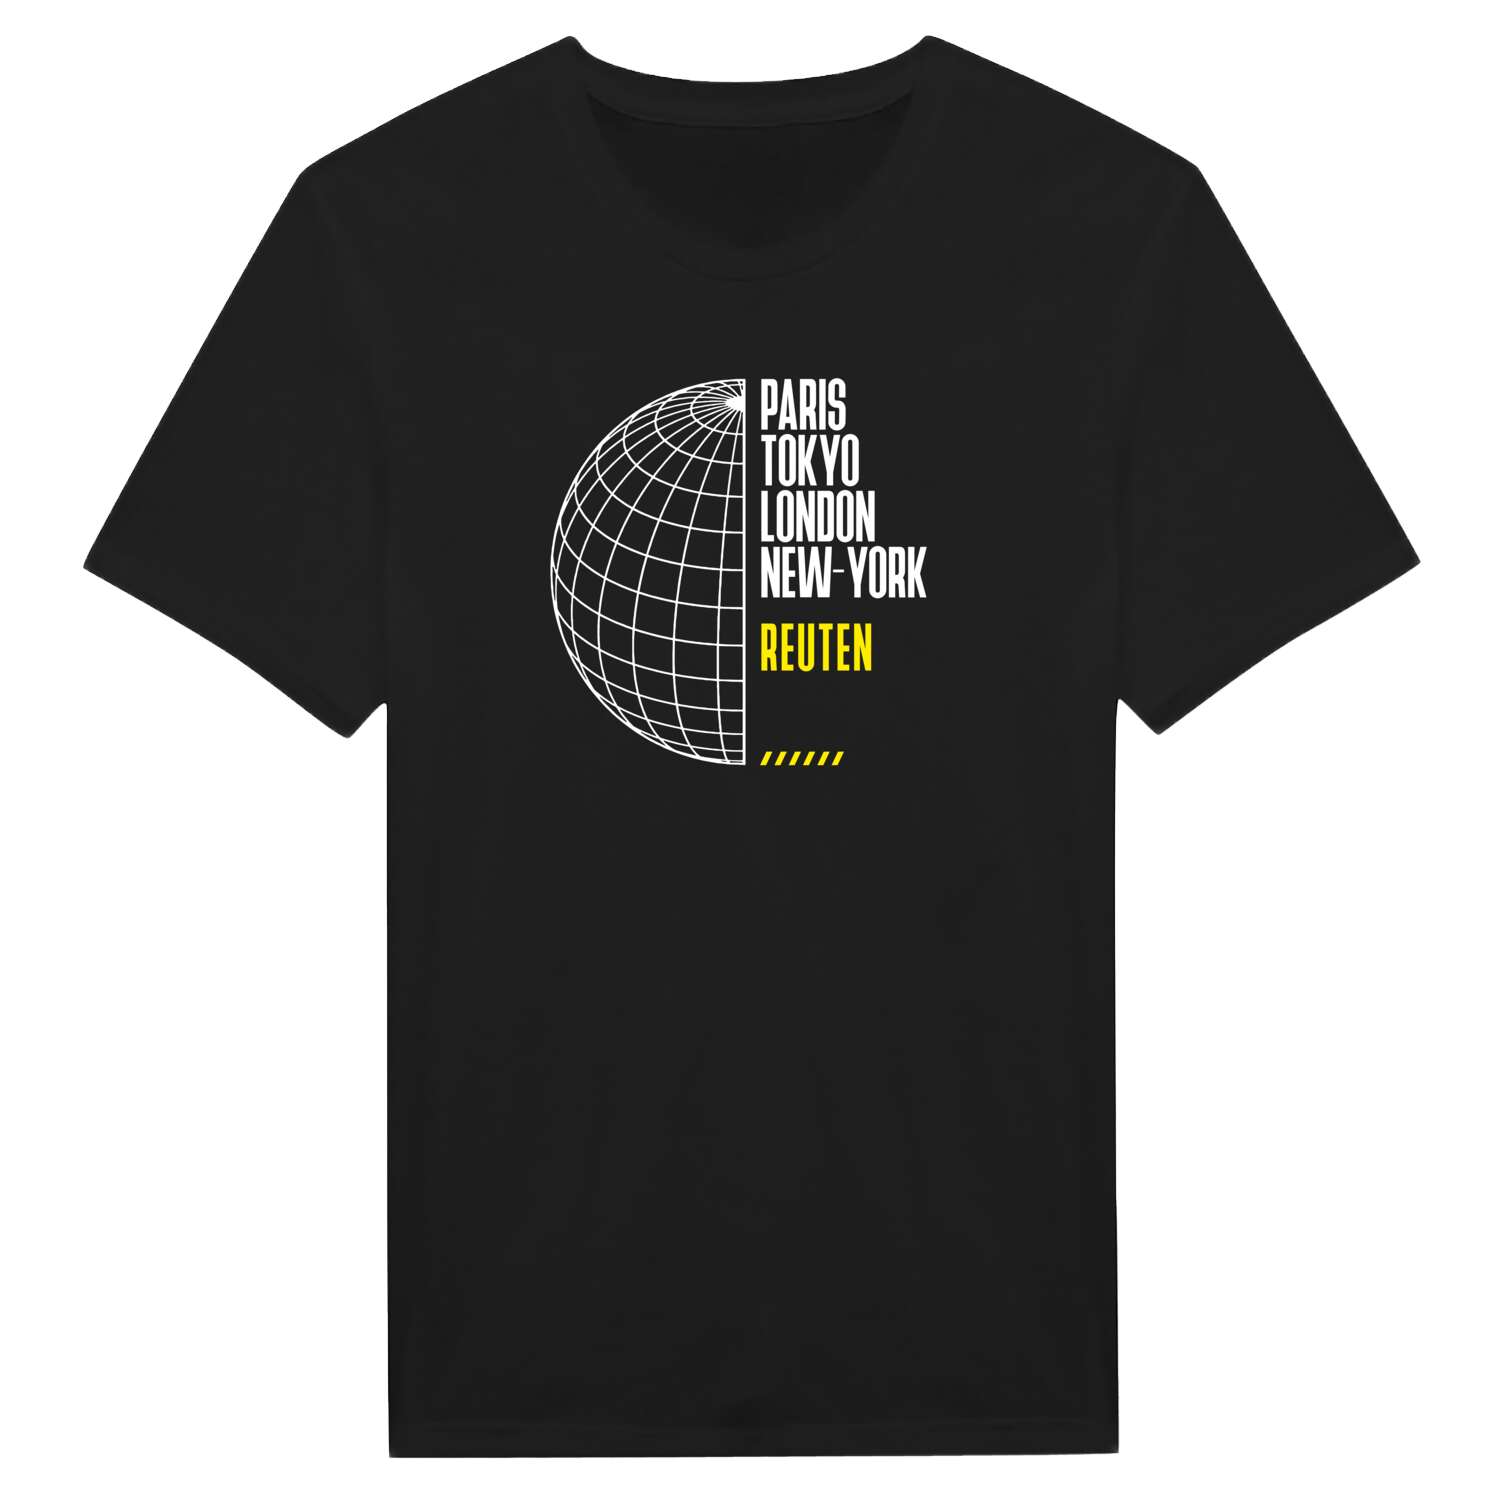 Reuten T-Shirt »Paris Tokyo London«